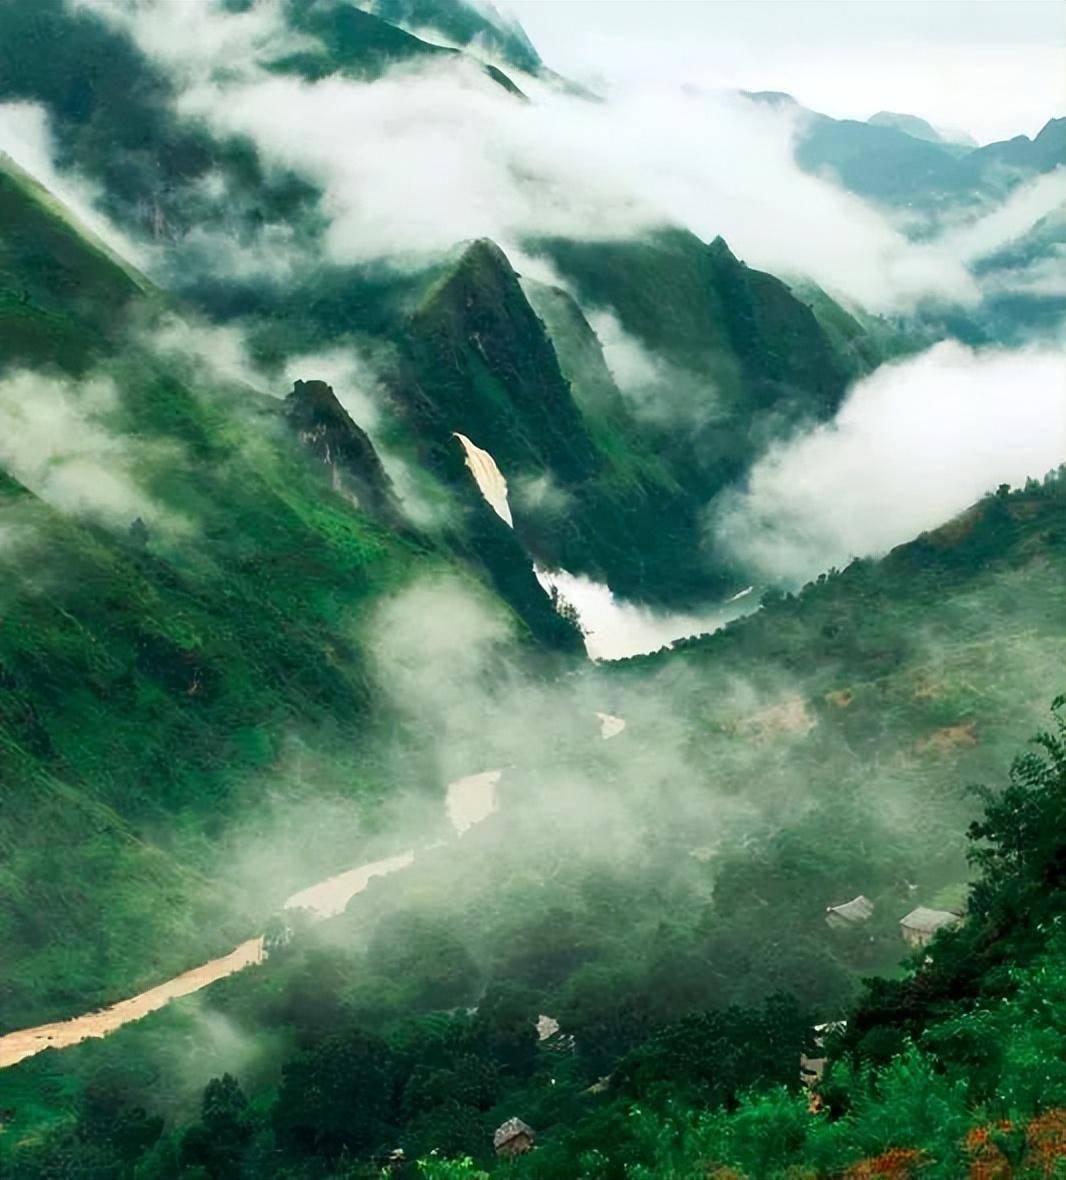 中国9大绝美大峡谷,丰富,壮美,无与伦比,美到窒息!